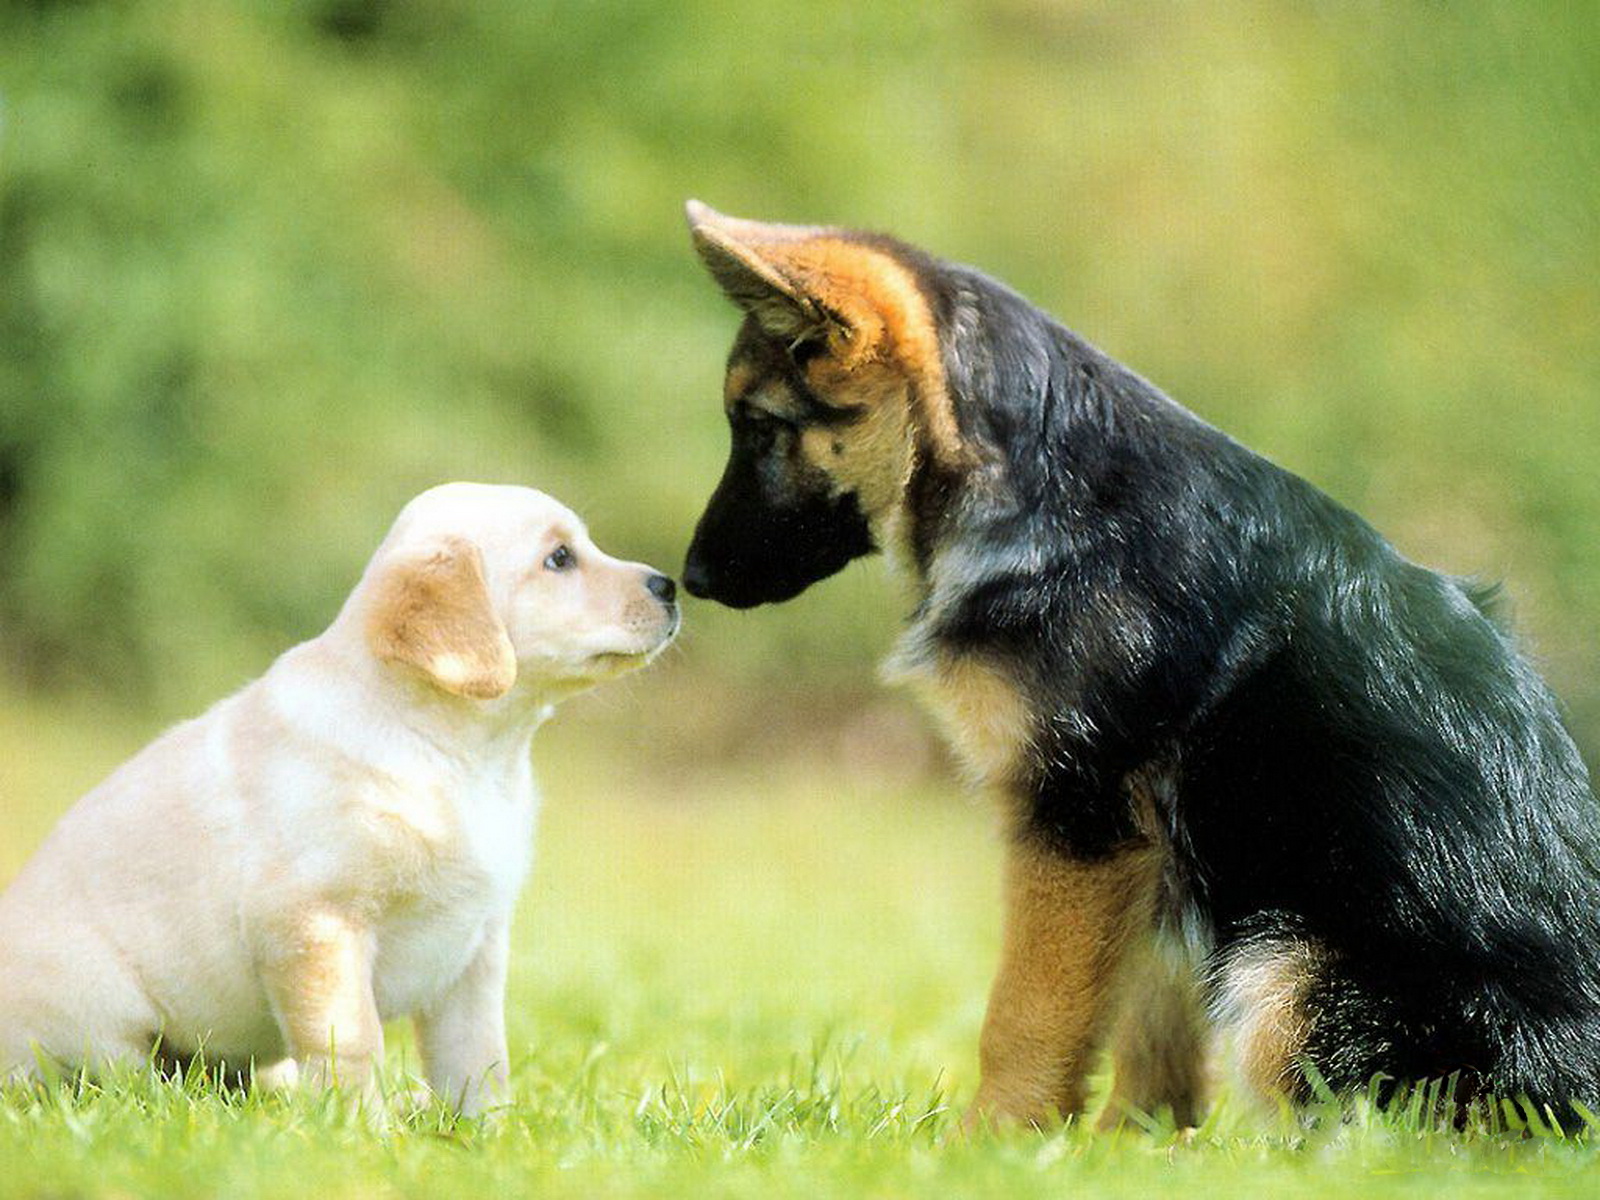 animali domestici wallpaper hd,cane,cucciolo,cane pastore tedesco,cane da compagnia,hovawart